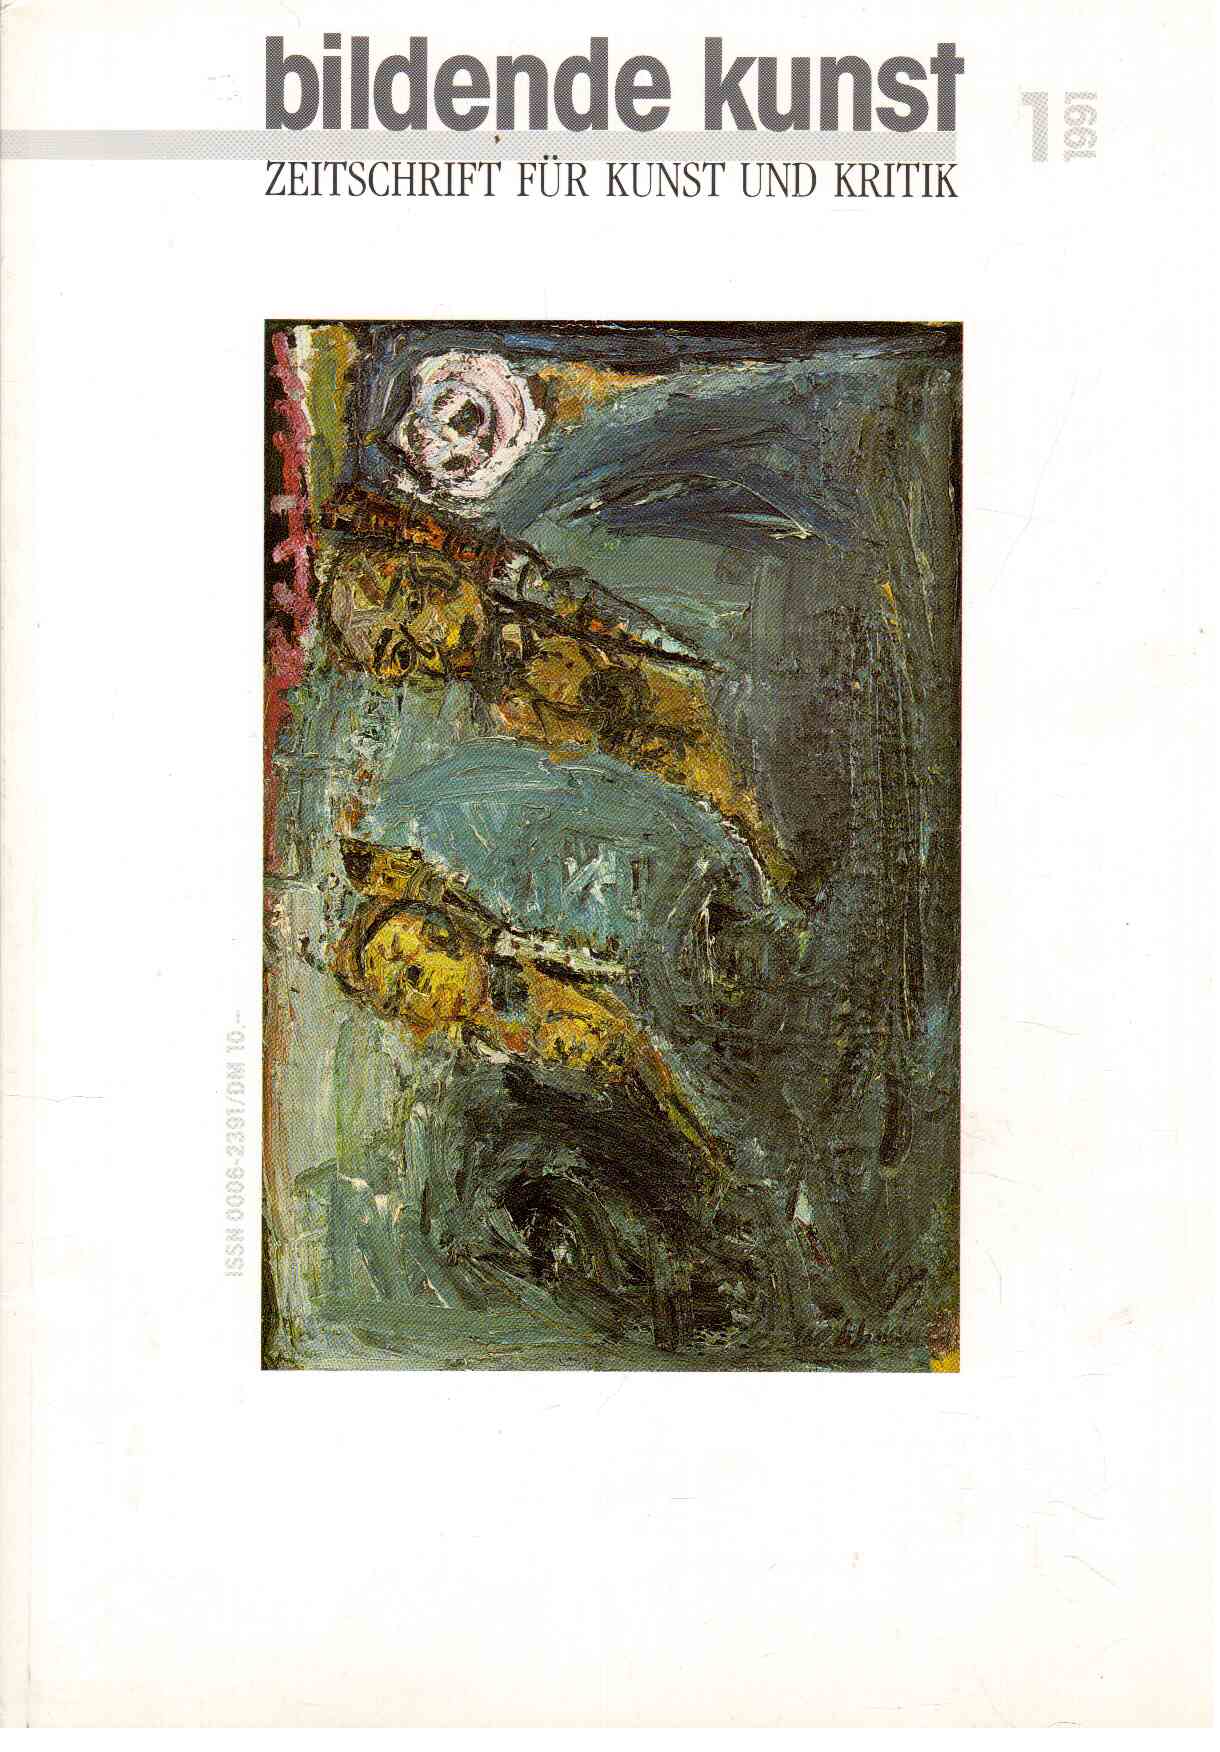 bildende kunst : Zeitschrift für Kunst und Kritik 1(1991)